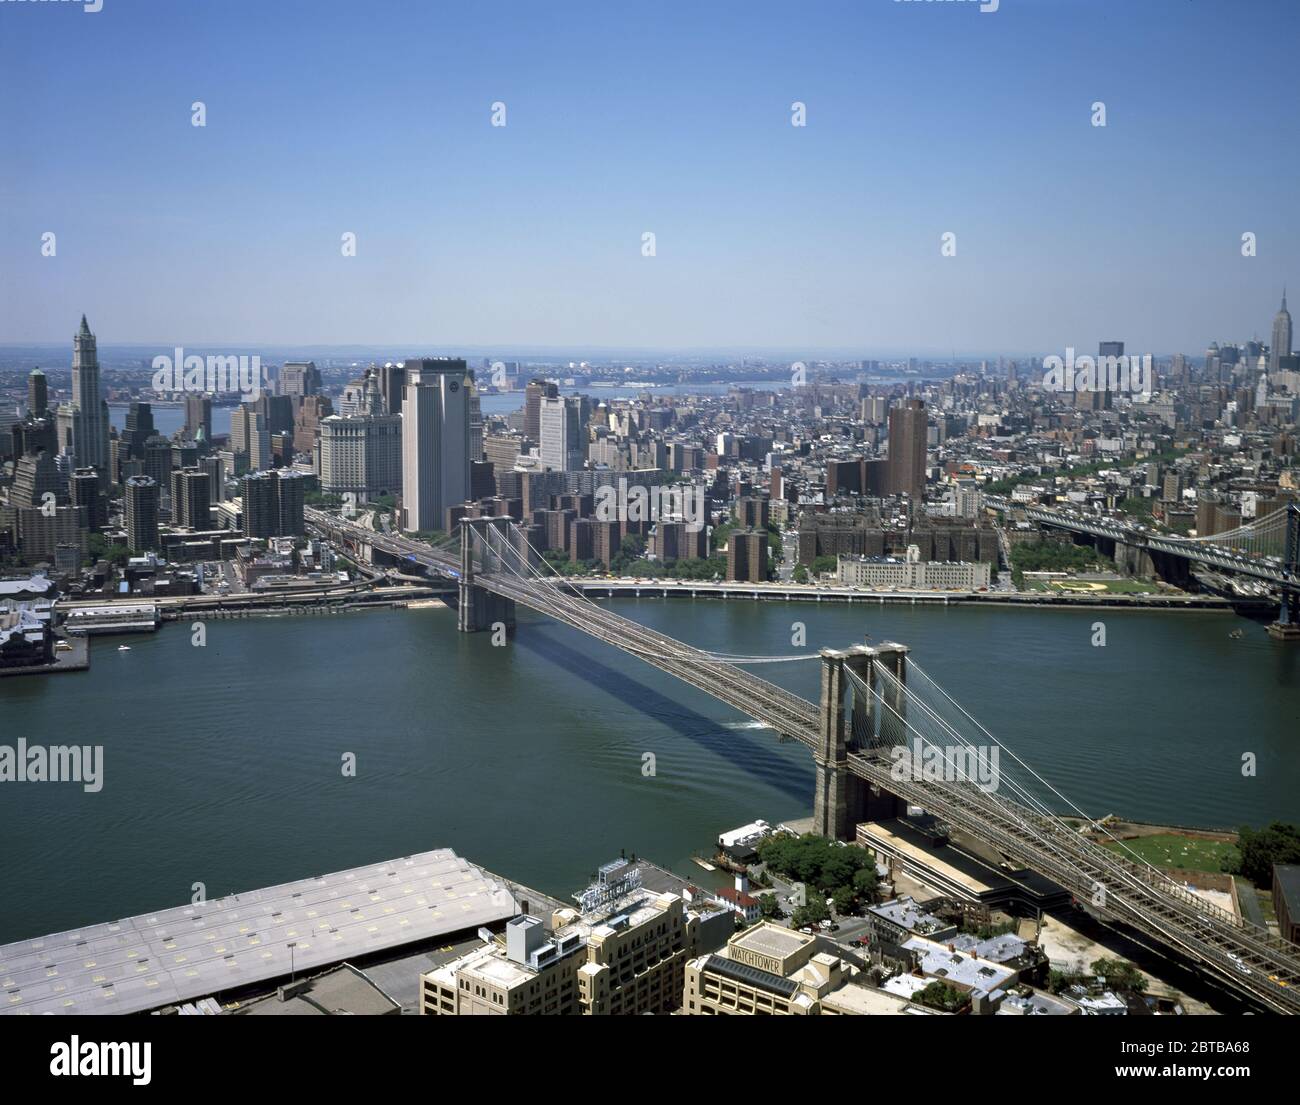 2000 ca, NEW YORK , USA : una vista aerea di New York, che si concentra sul Ponte di Brooklyn , guardando verso Manhattan. A destra, in lontananza, si trova l'Empire state Building . Il grande ponte sospeso East River, aperto il giorno 24 maggio 1883 -- che collega le città di New York e Brooklyn . Highsmith - PONTE DI BROOKLYN - PONTE DI BROOKLYN - FOTO STORICHE - STORIA - GEOGRAFIA - GEOGRAFIA - STOCK - paesaggio - paesaggio - paesaggio - veduta - panorama - fiume fiume hudson - paesaggio ---- Archivio GBB Foto Stock